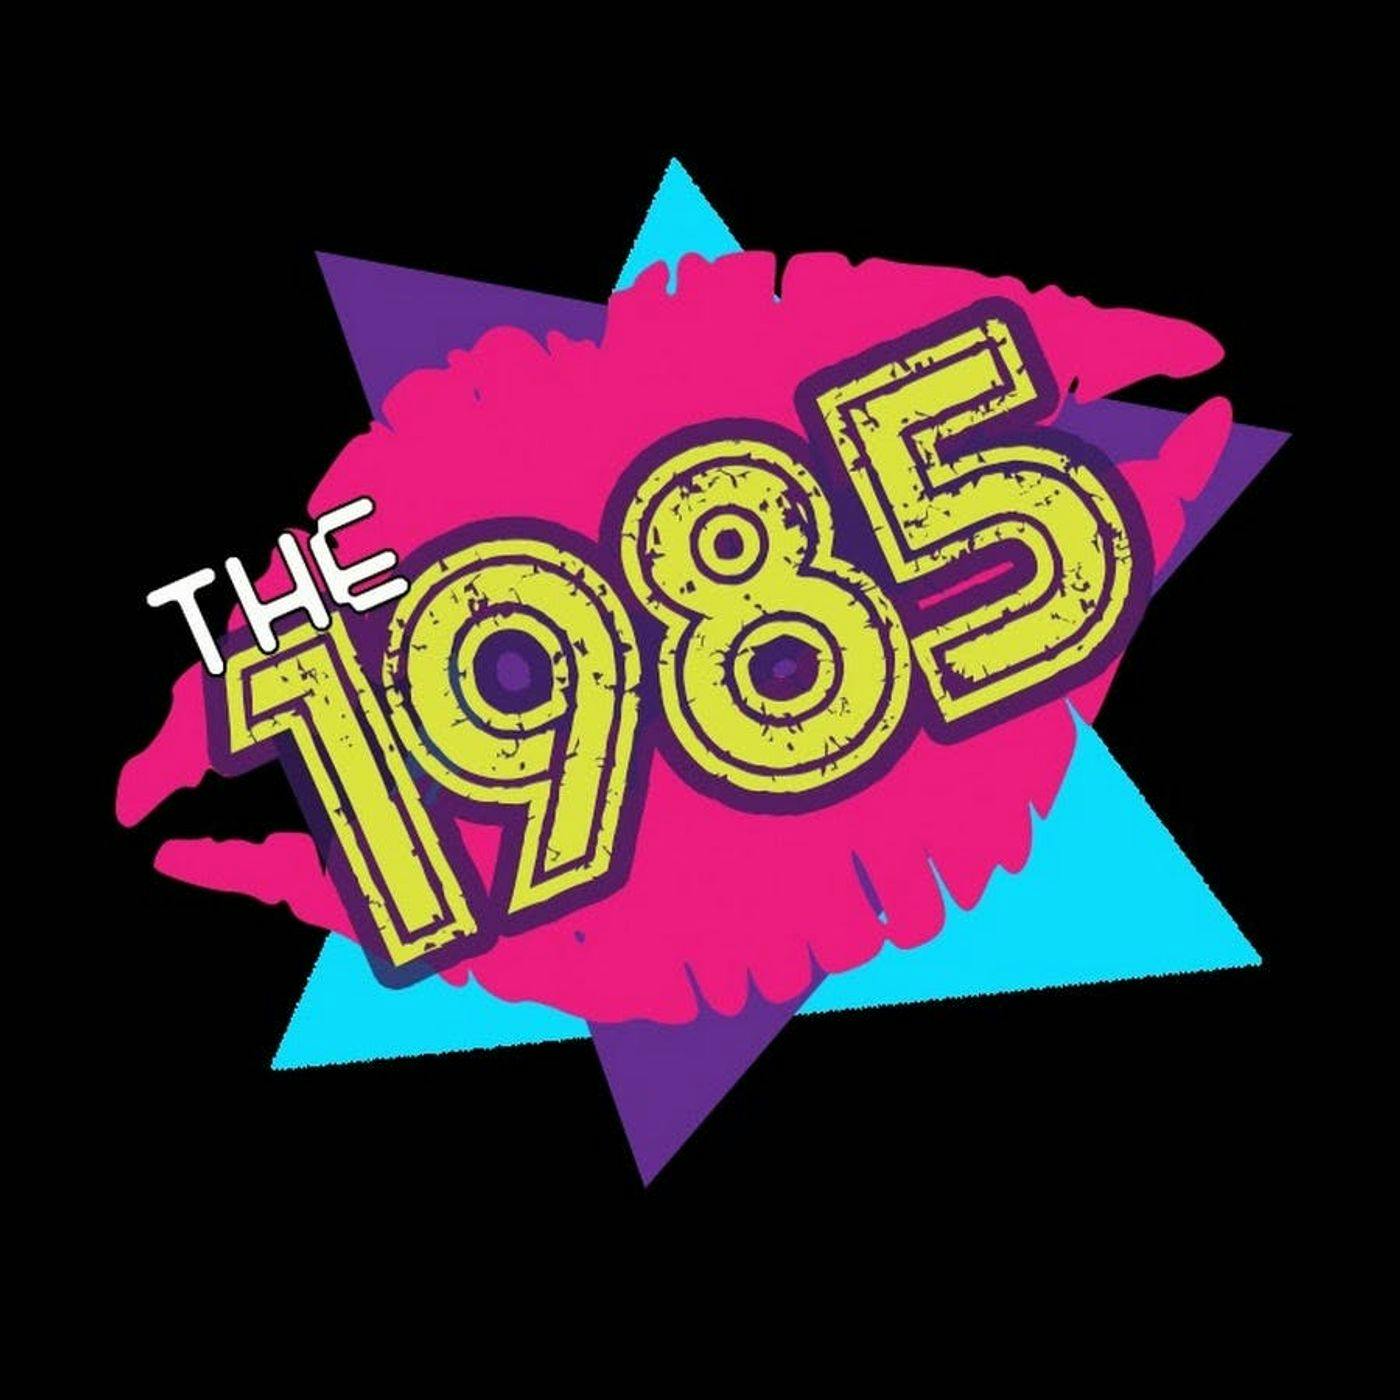 1985 in Pop Culture